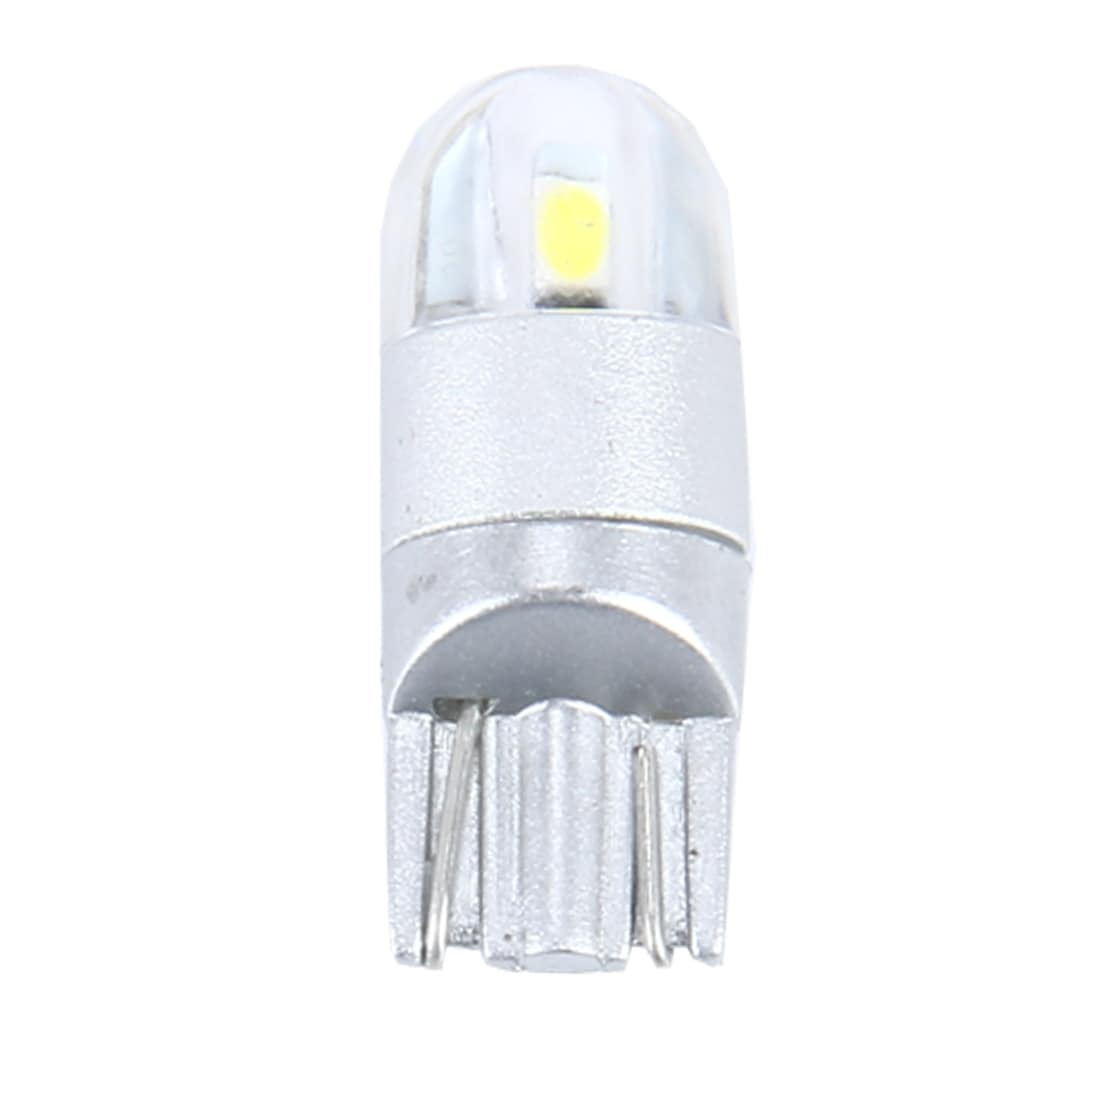 Lamp LED T10 2W - 2Pack Parkeerlicht / positielicht